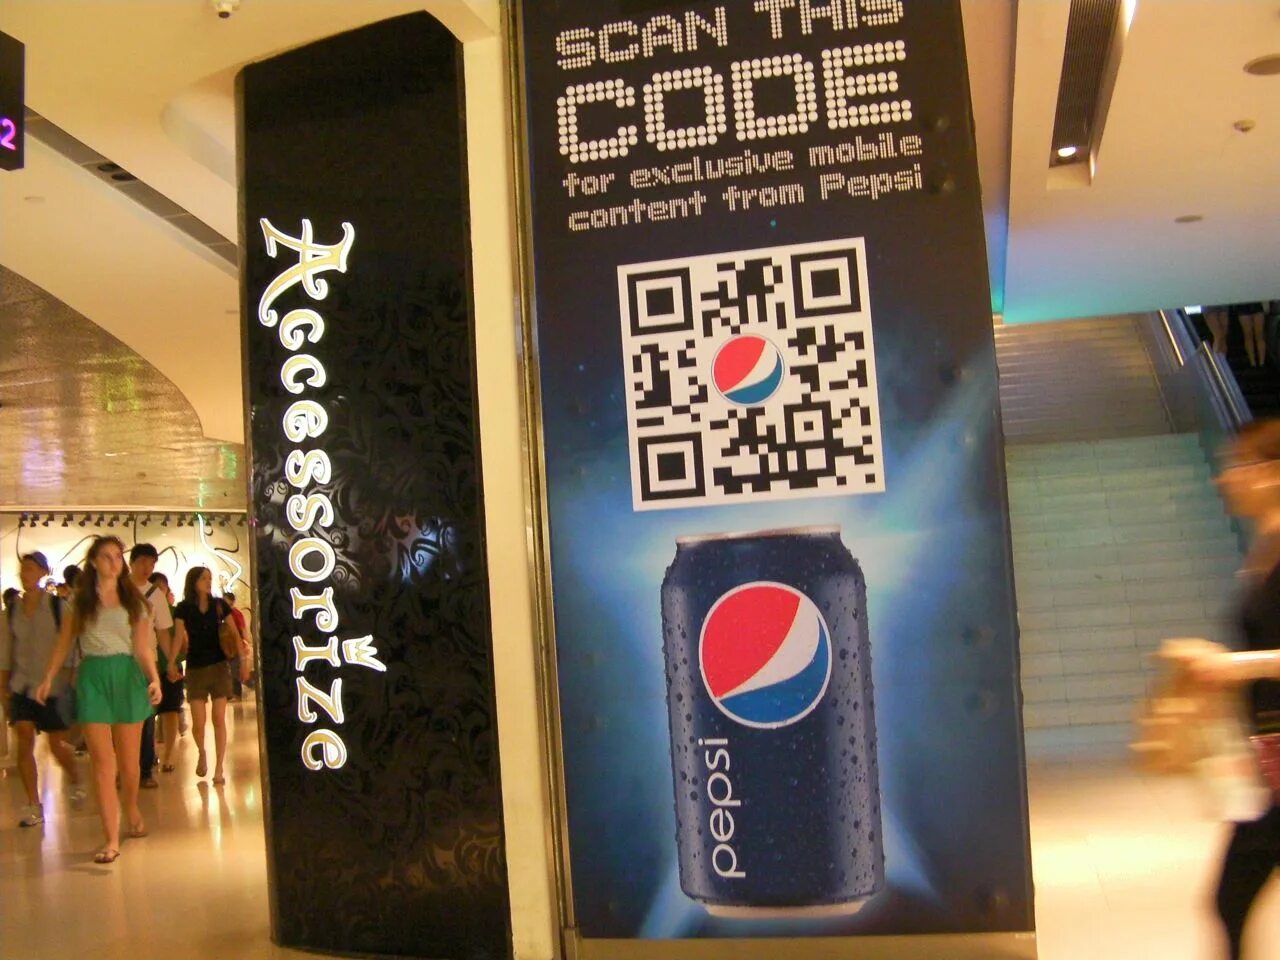 QR код. QR коды в рекламе. Стойки с QR кодом. Рекламный баннер с QR кодом. Qr код в маркете